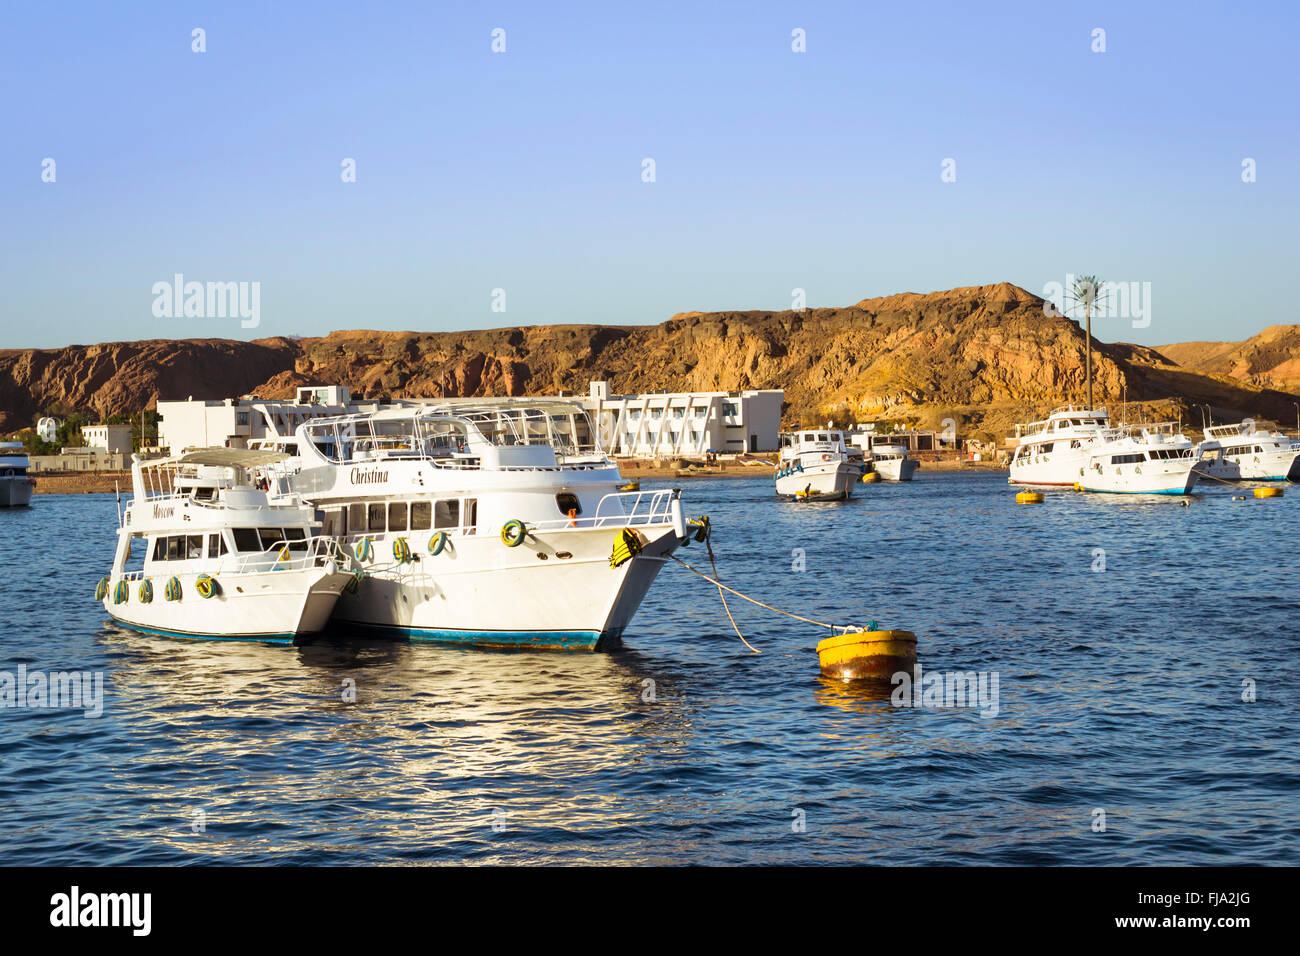 Marina: Sportboote Sightseeing auf dem Parkplatz des Bootes Park, Bootsfahrt für Touristen, Sharm El Sheikh, Ägypten Stockfoto